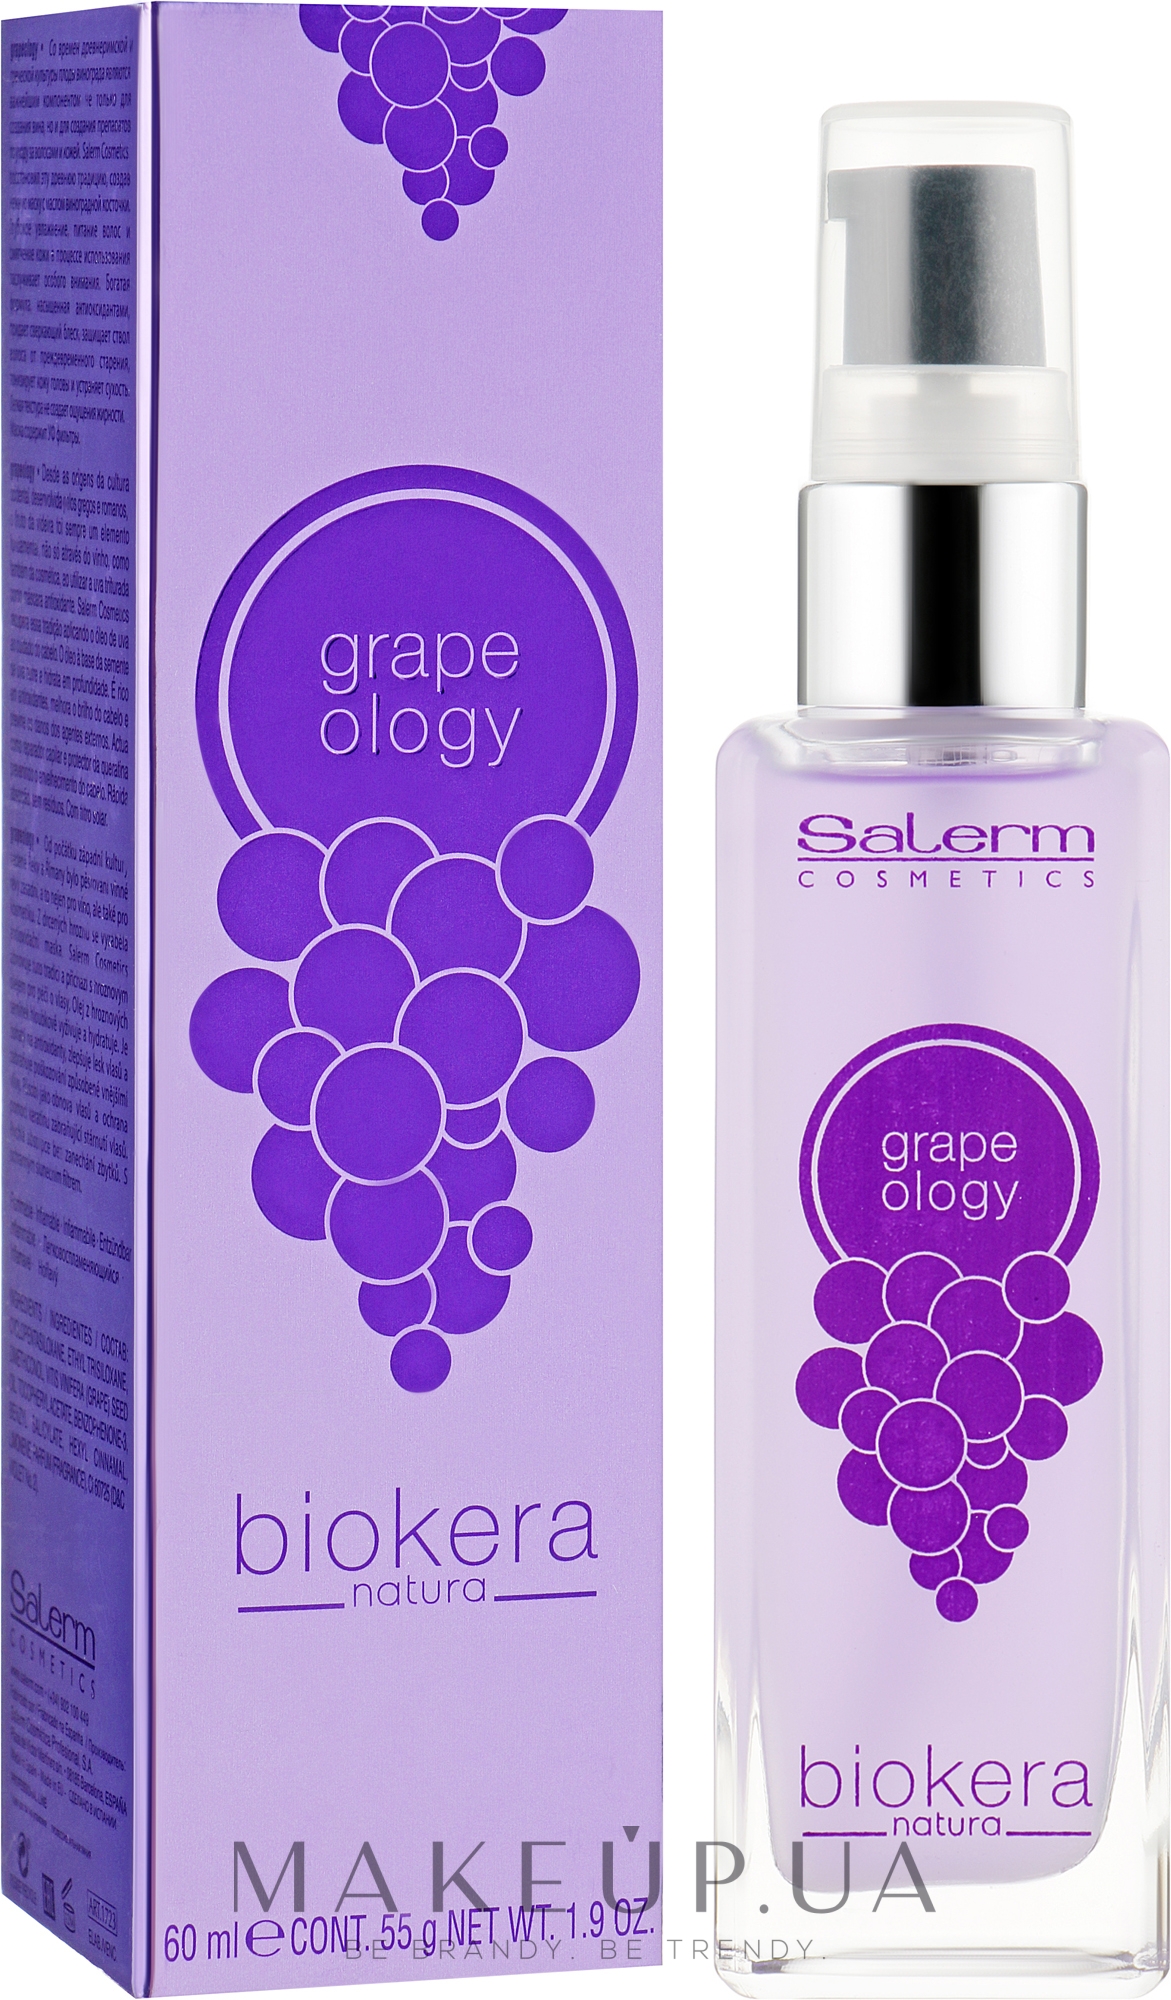 Salerm Biokera Grapeology - Виноградное масло для волос: купить по лучшей  цене в Украине 